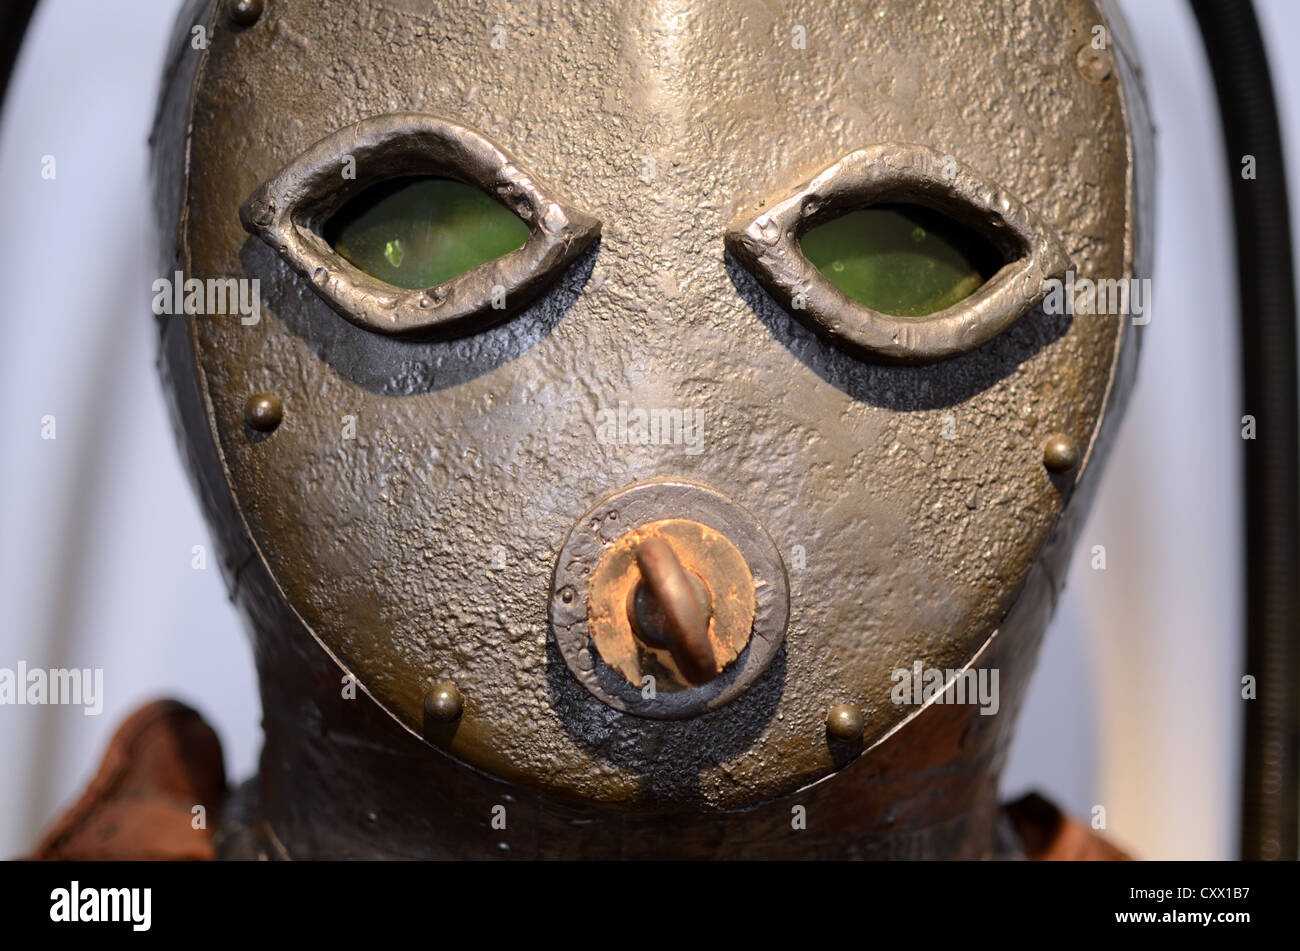 Masque facial détail de la première combinaison de plongée ou de l'équipement de plongée précoce et masque la reconstruction 'Caphandre' (1775) Banque D'Images